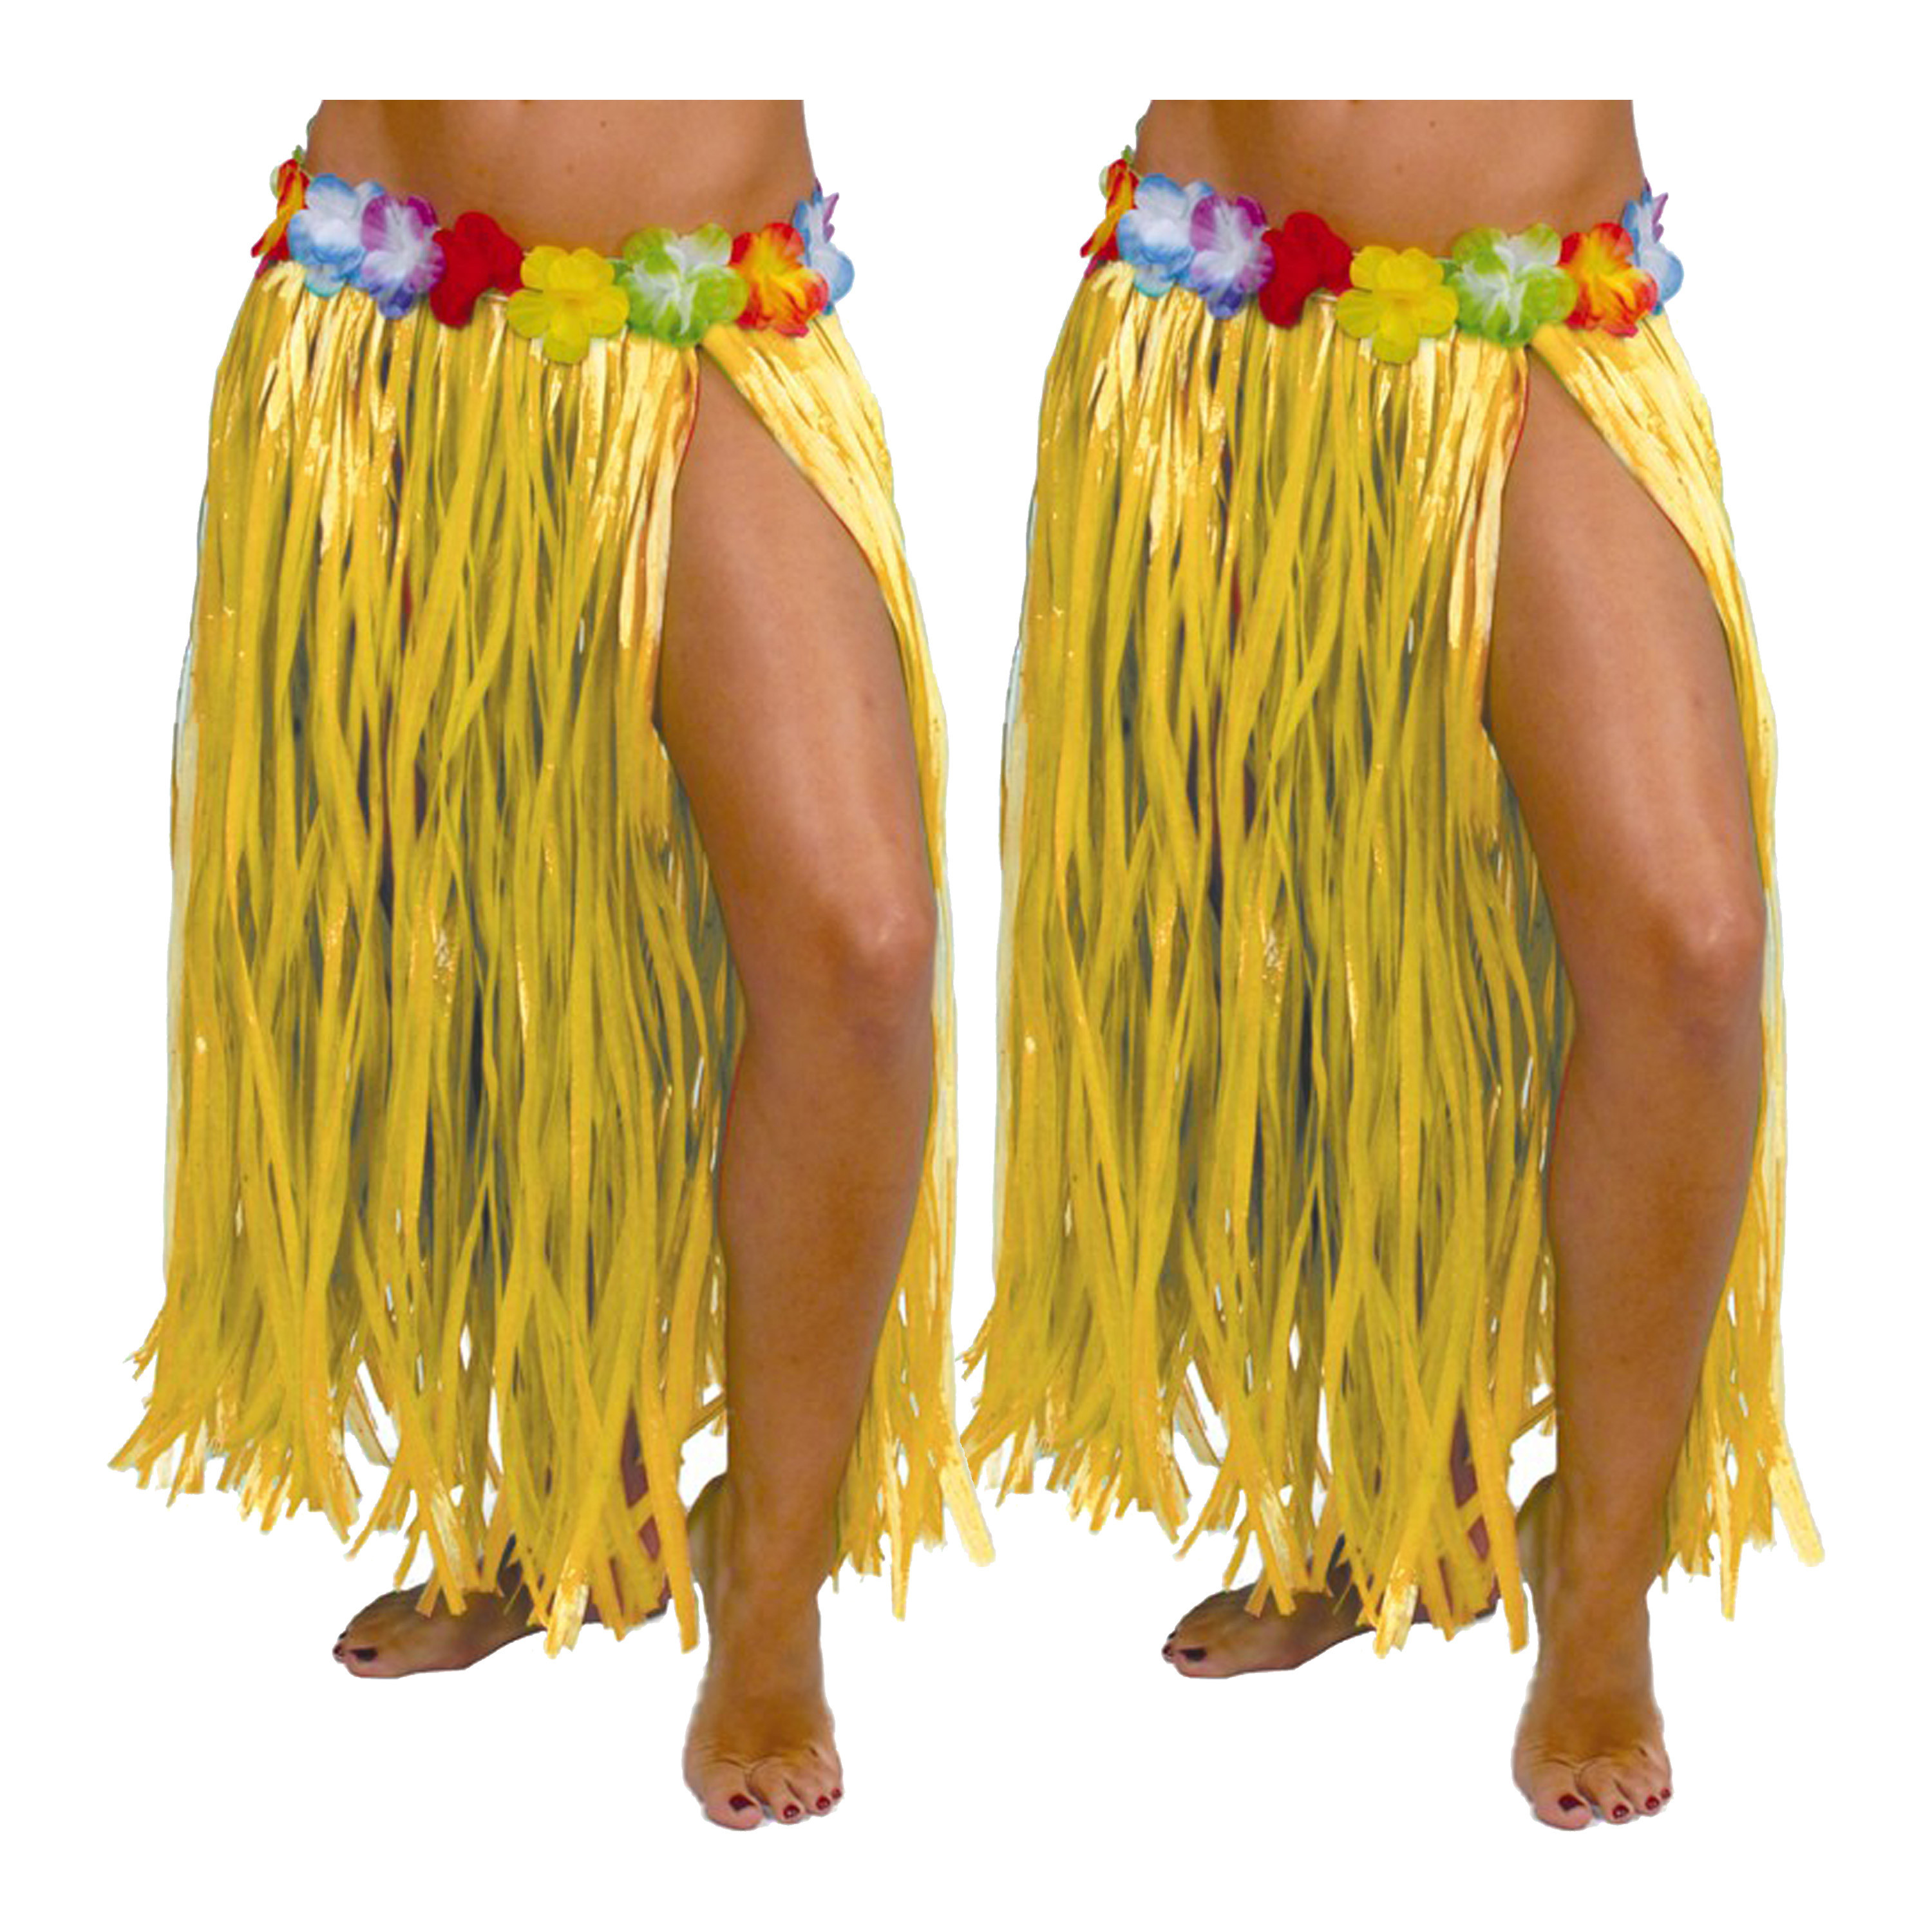 Hawaii verkleed rokje - 2x - voor volwassenen - geel - 75 cm - rieten hoela rokje - tropisch